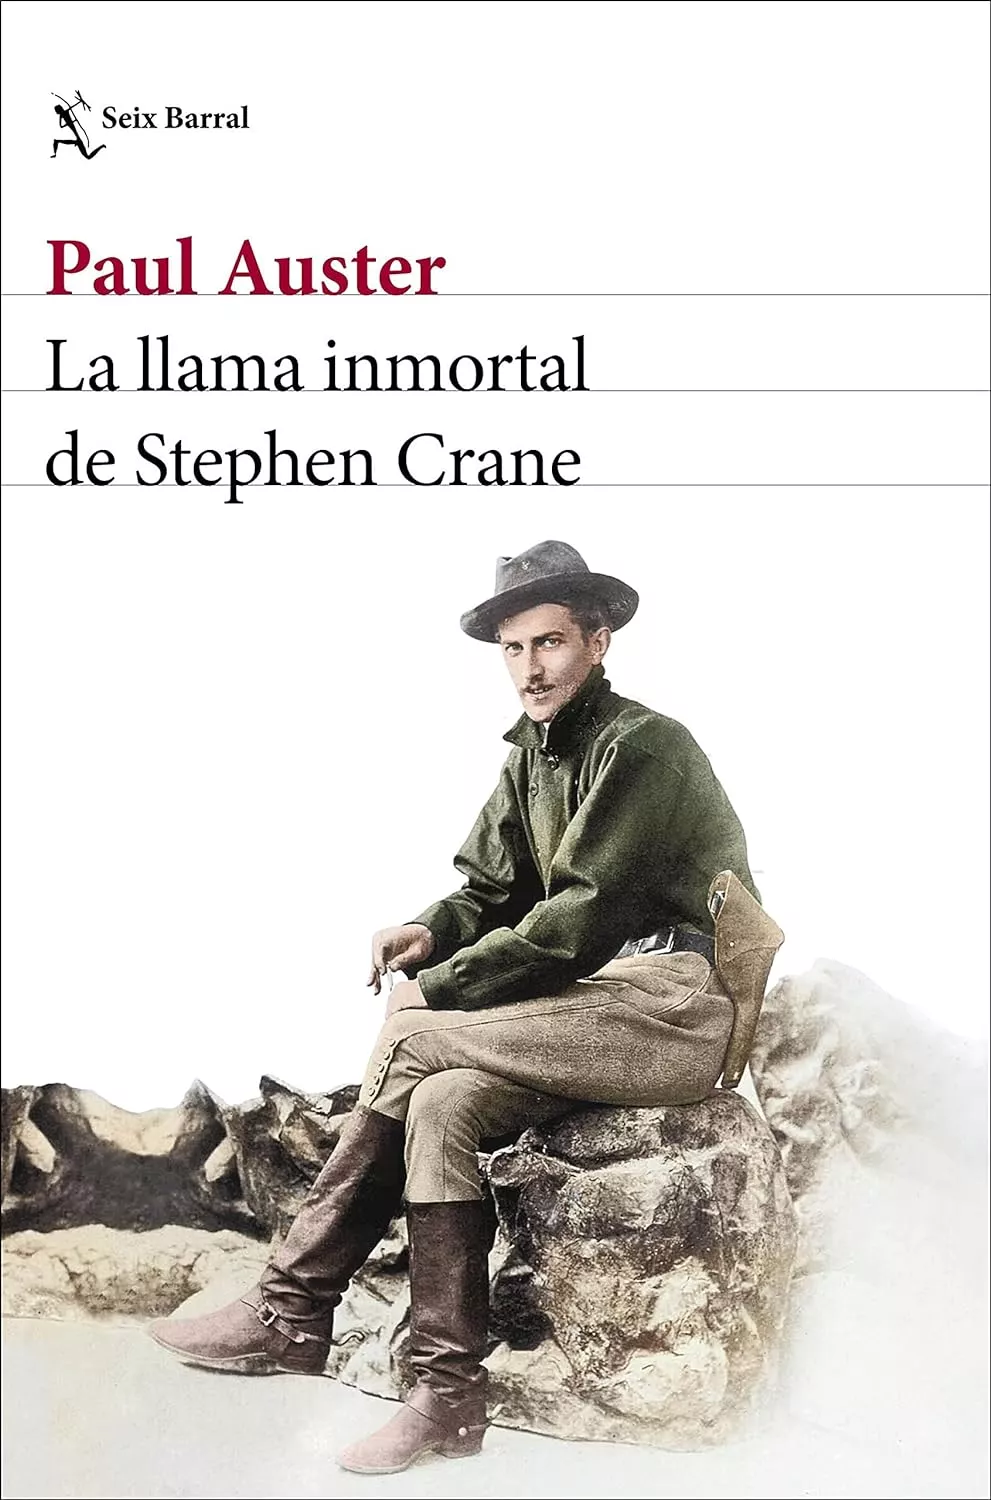 'La llama inmortal de Stephen Crane'